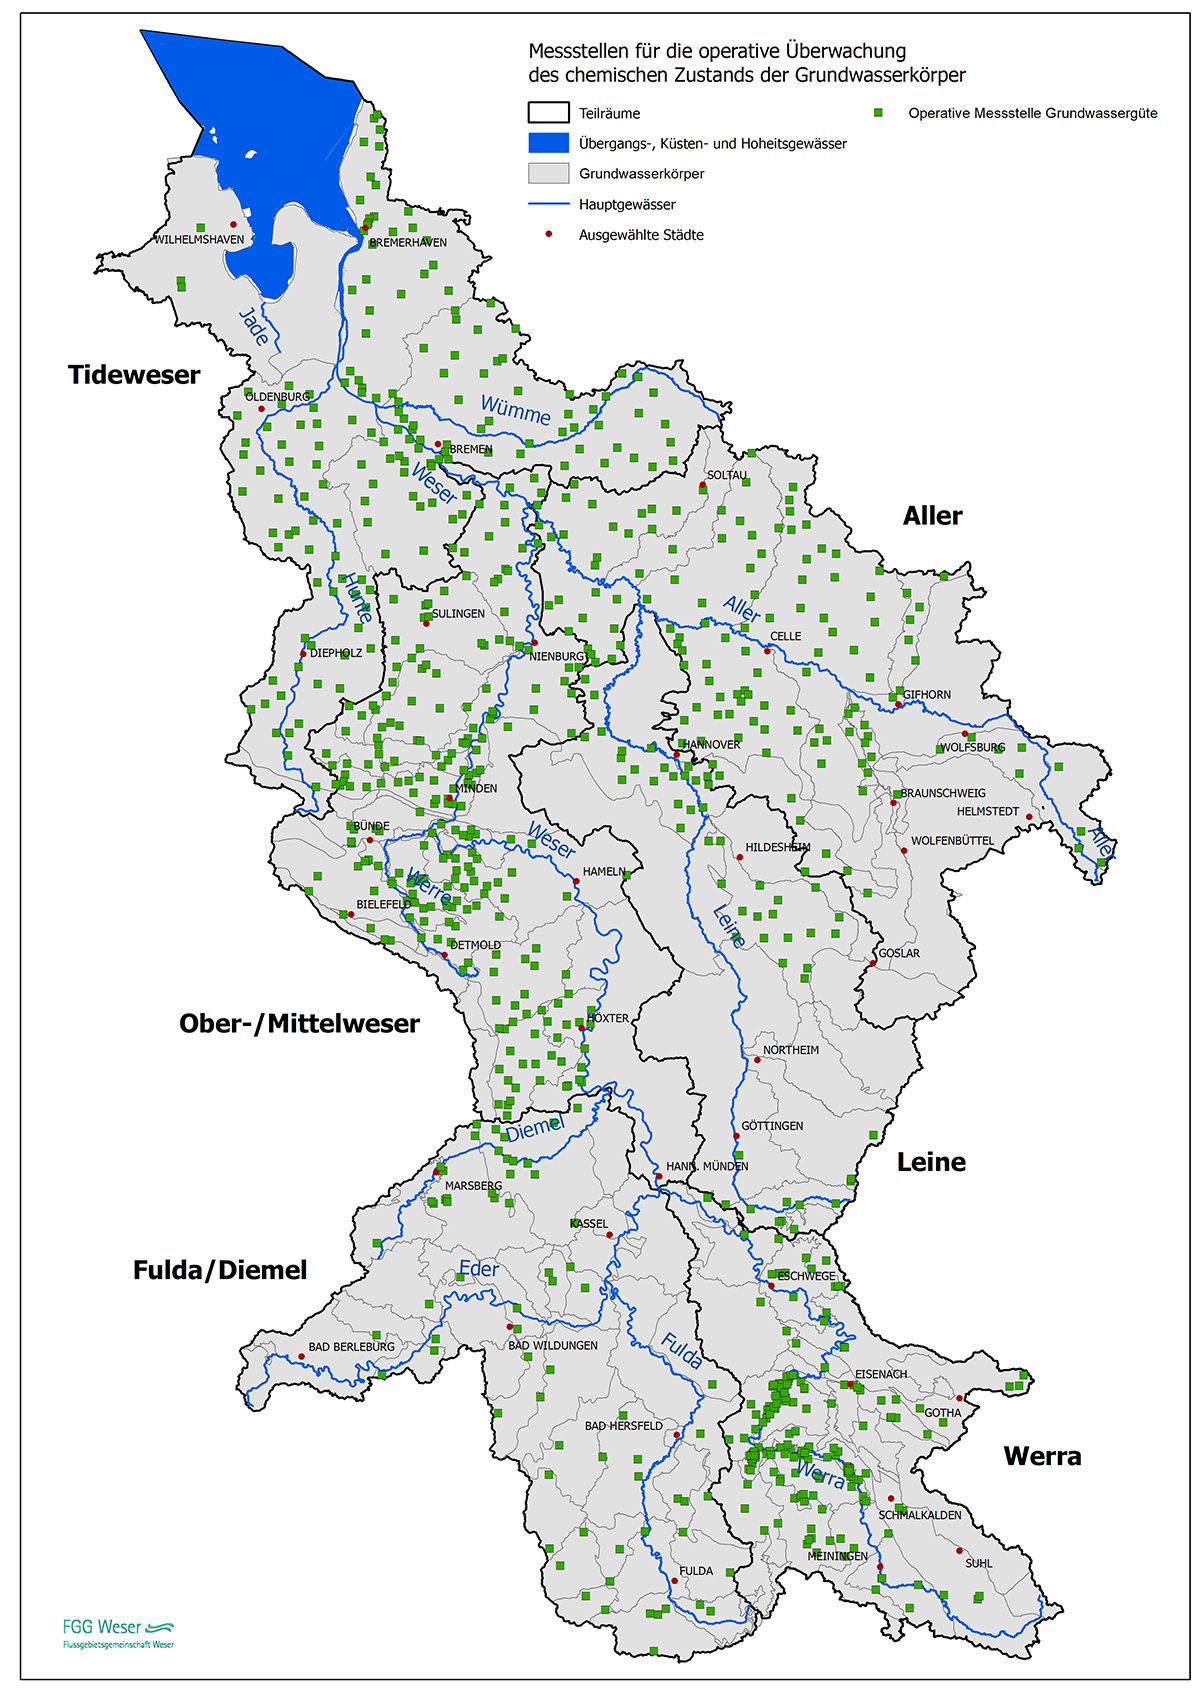 Operatives Messnetz für das Grundwassermonitoring (FGG Weser, 2021)